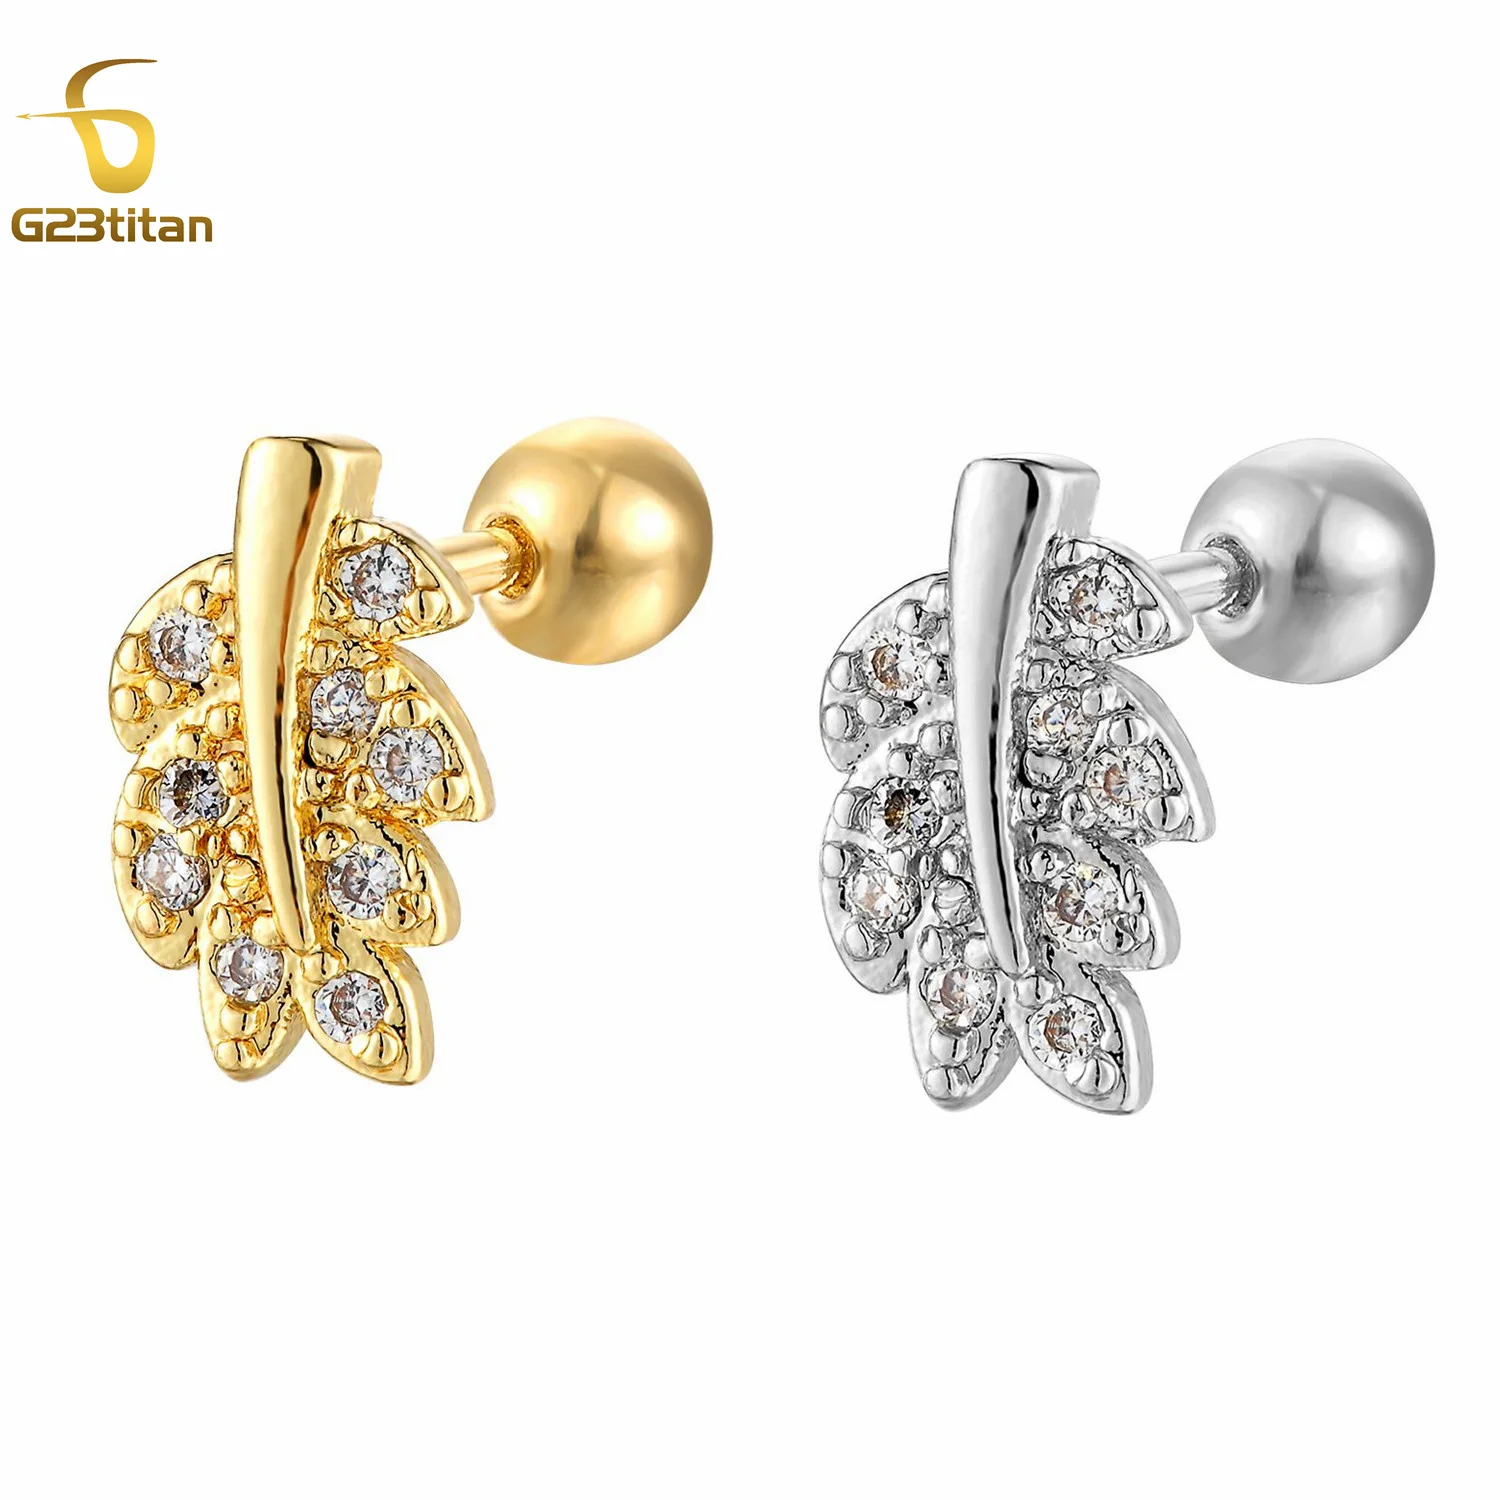 

1pc Fashion CZ Zircon Leaf Earring 16G Stainless Steel Cartilage Tragus Helix Lobe Piercing Ring Women Ear Studs Body Jewelry